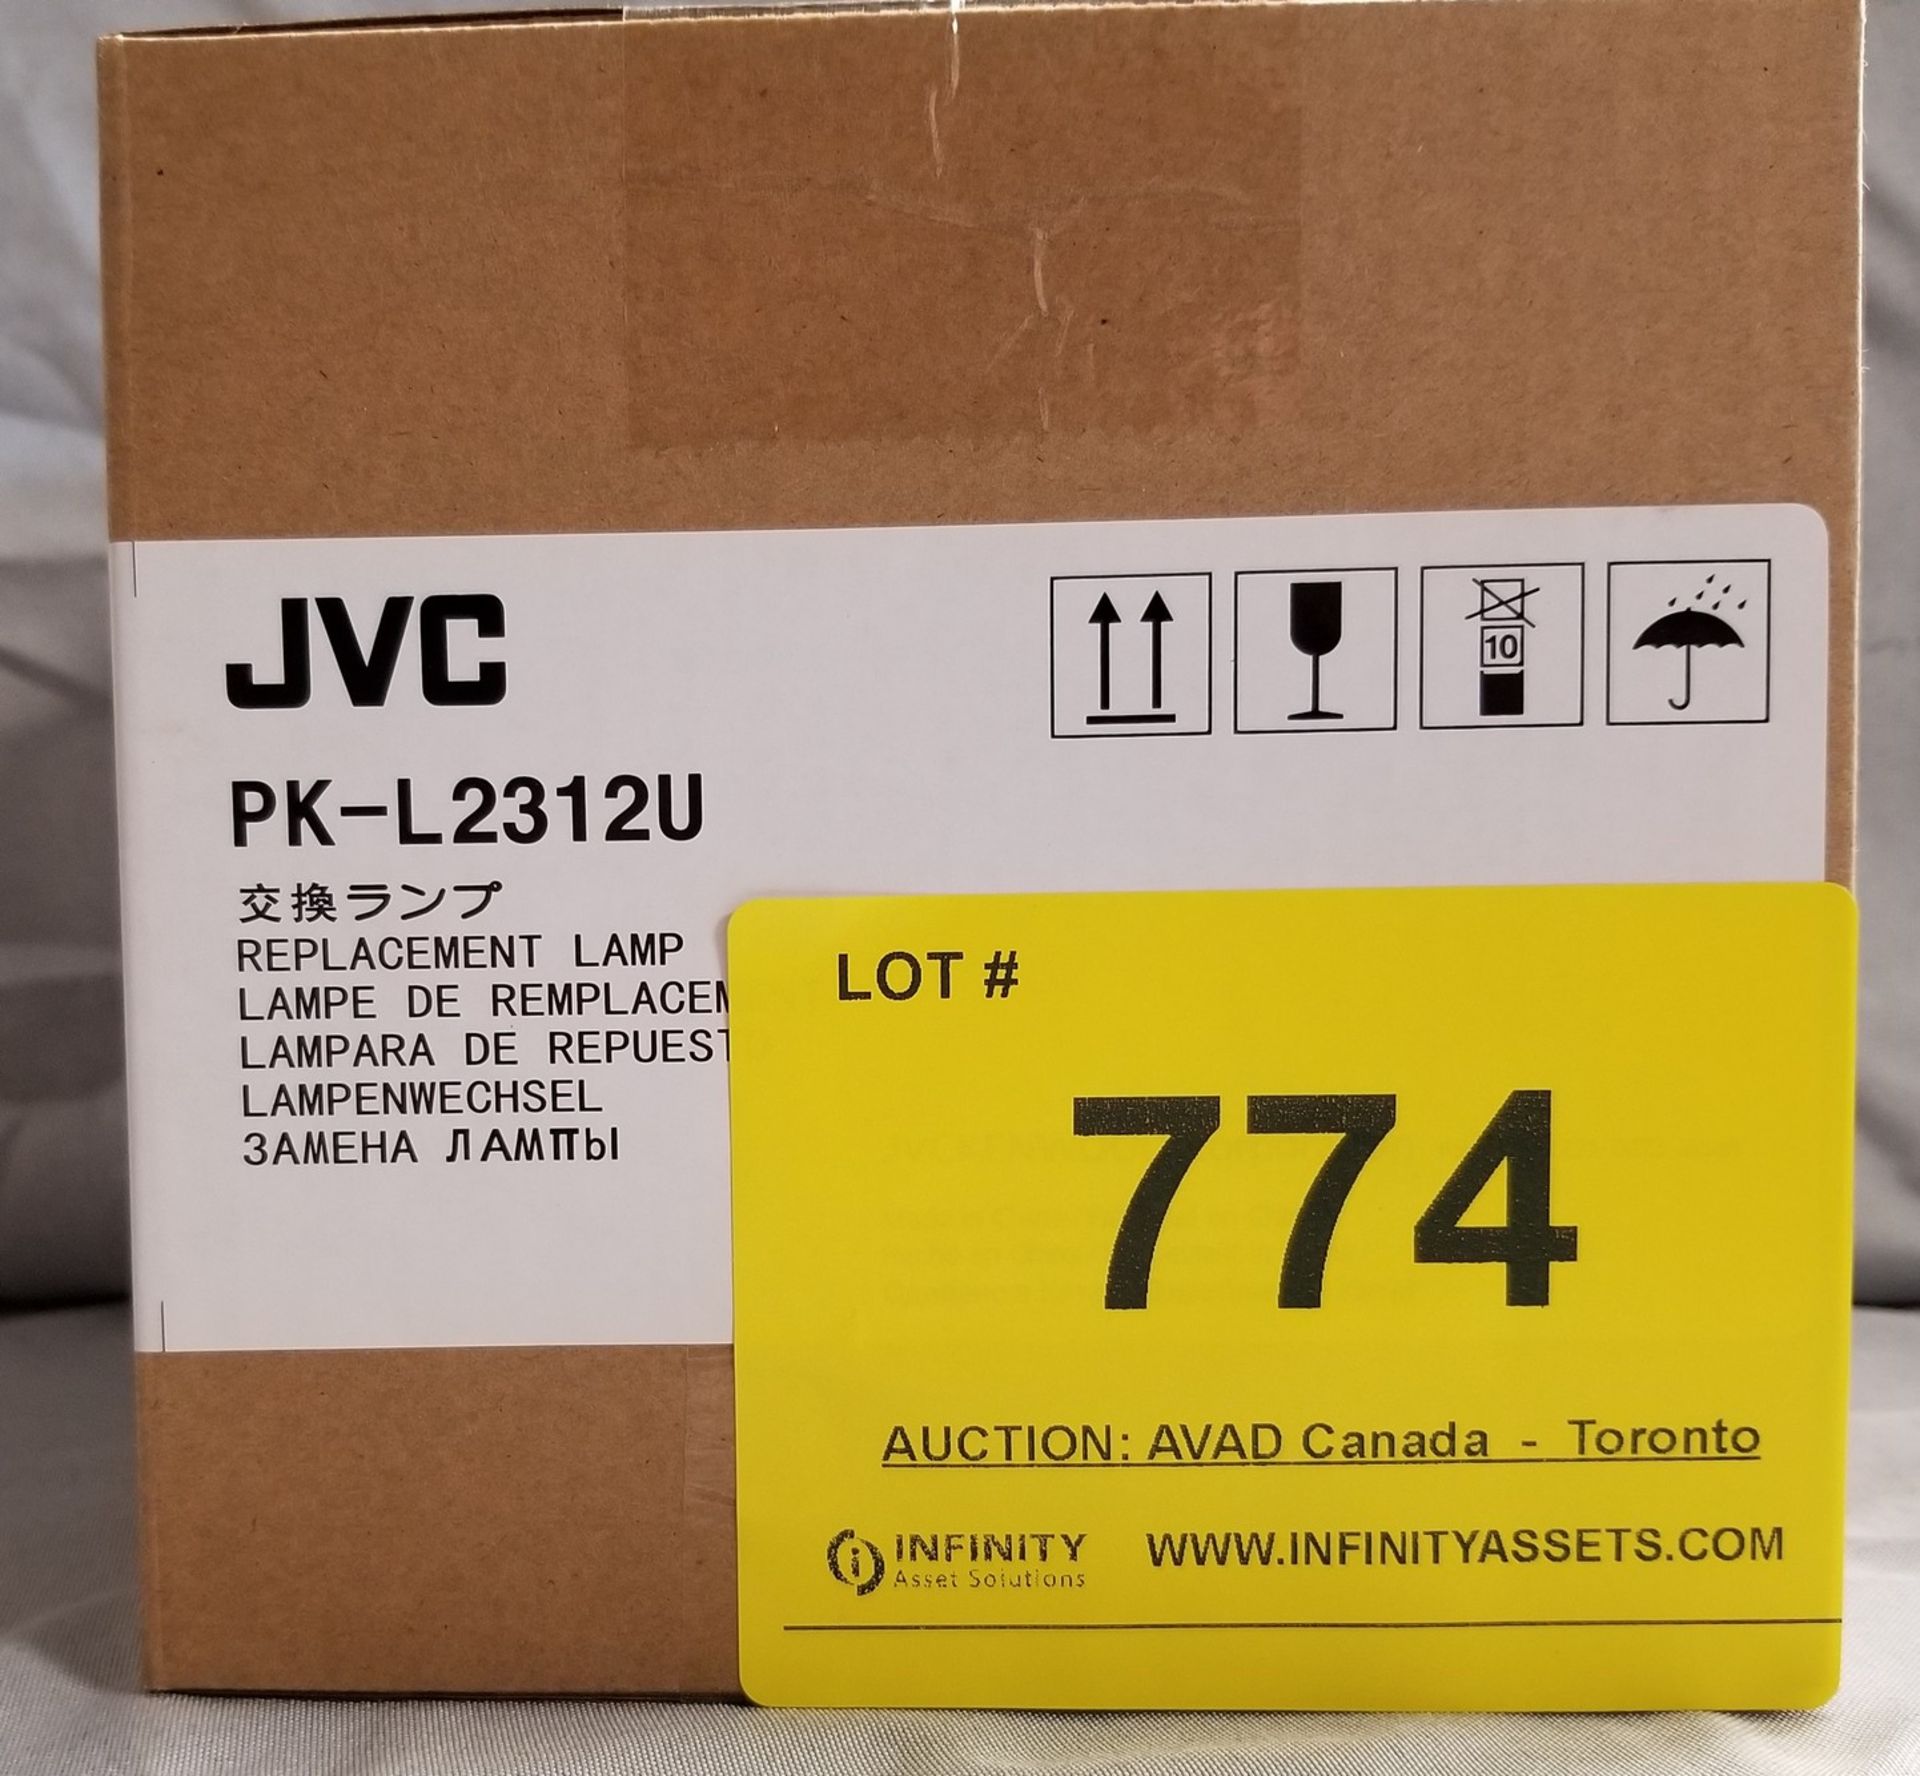 JVC, PK-L221OU REPLACEMENT LAMP - (BNIB) MSRP $99